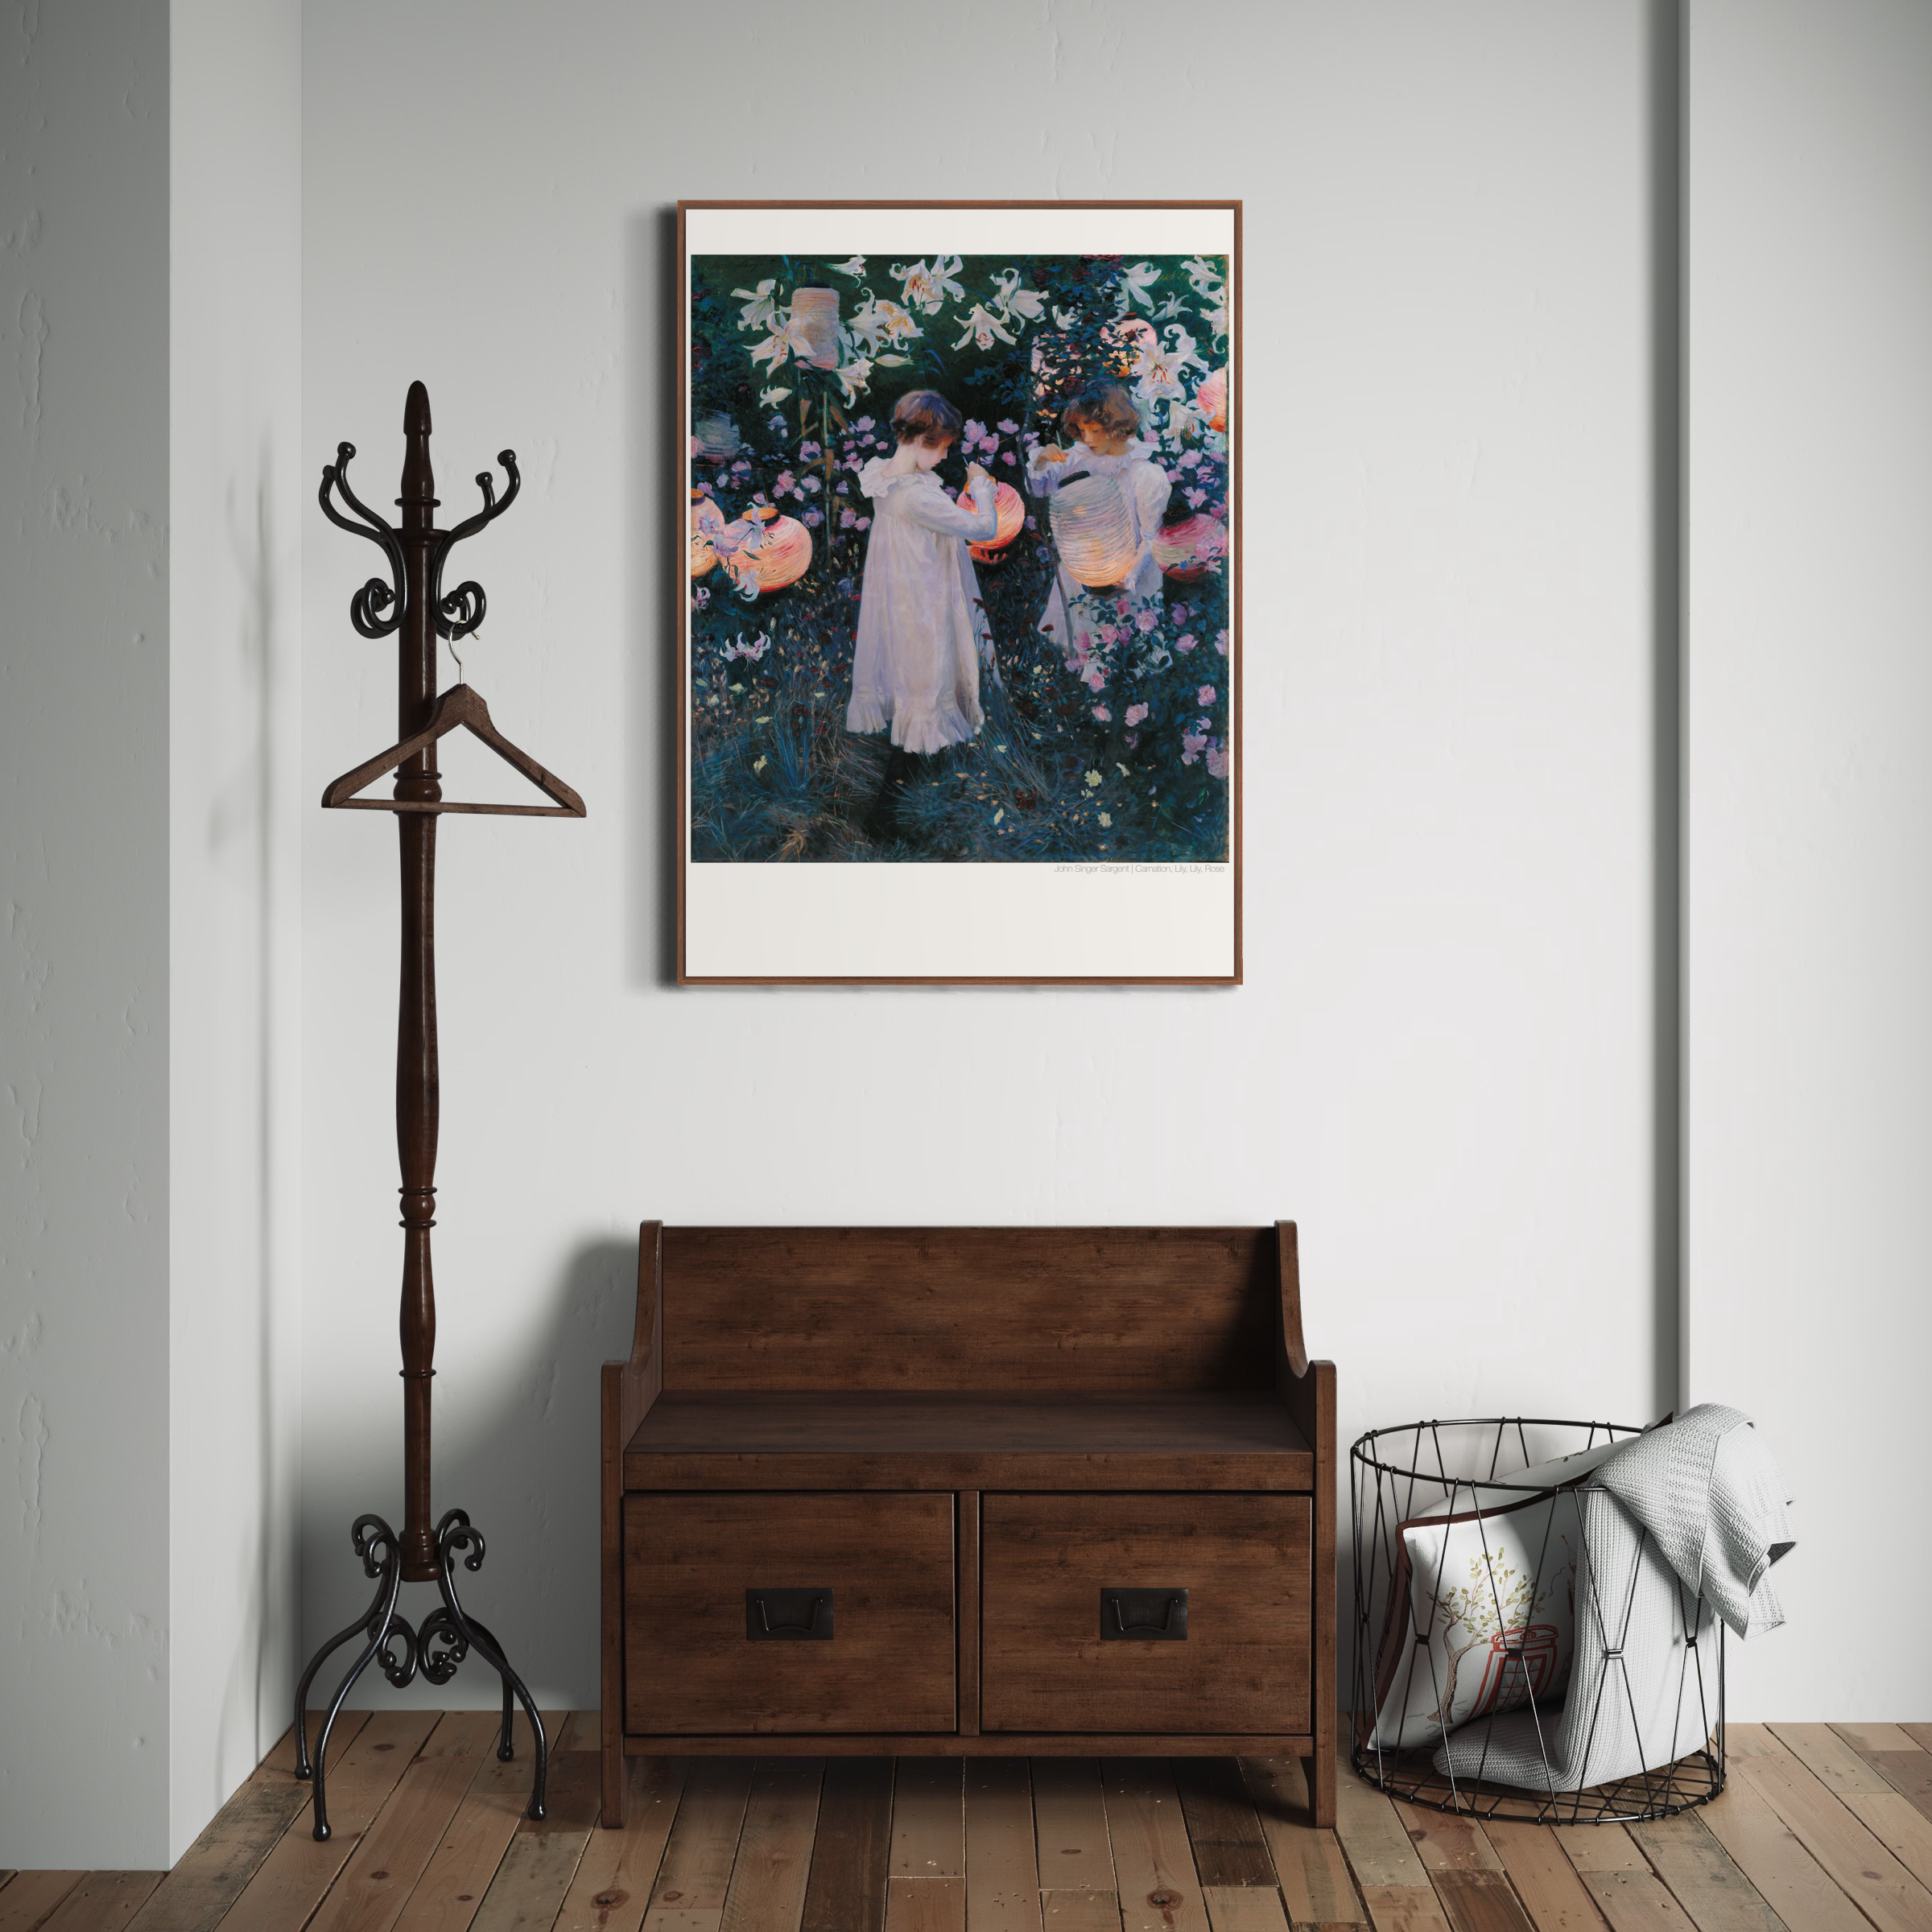 John Singer Sargent Poster - Carnation, Lily, Lily, Rose